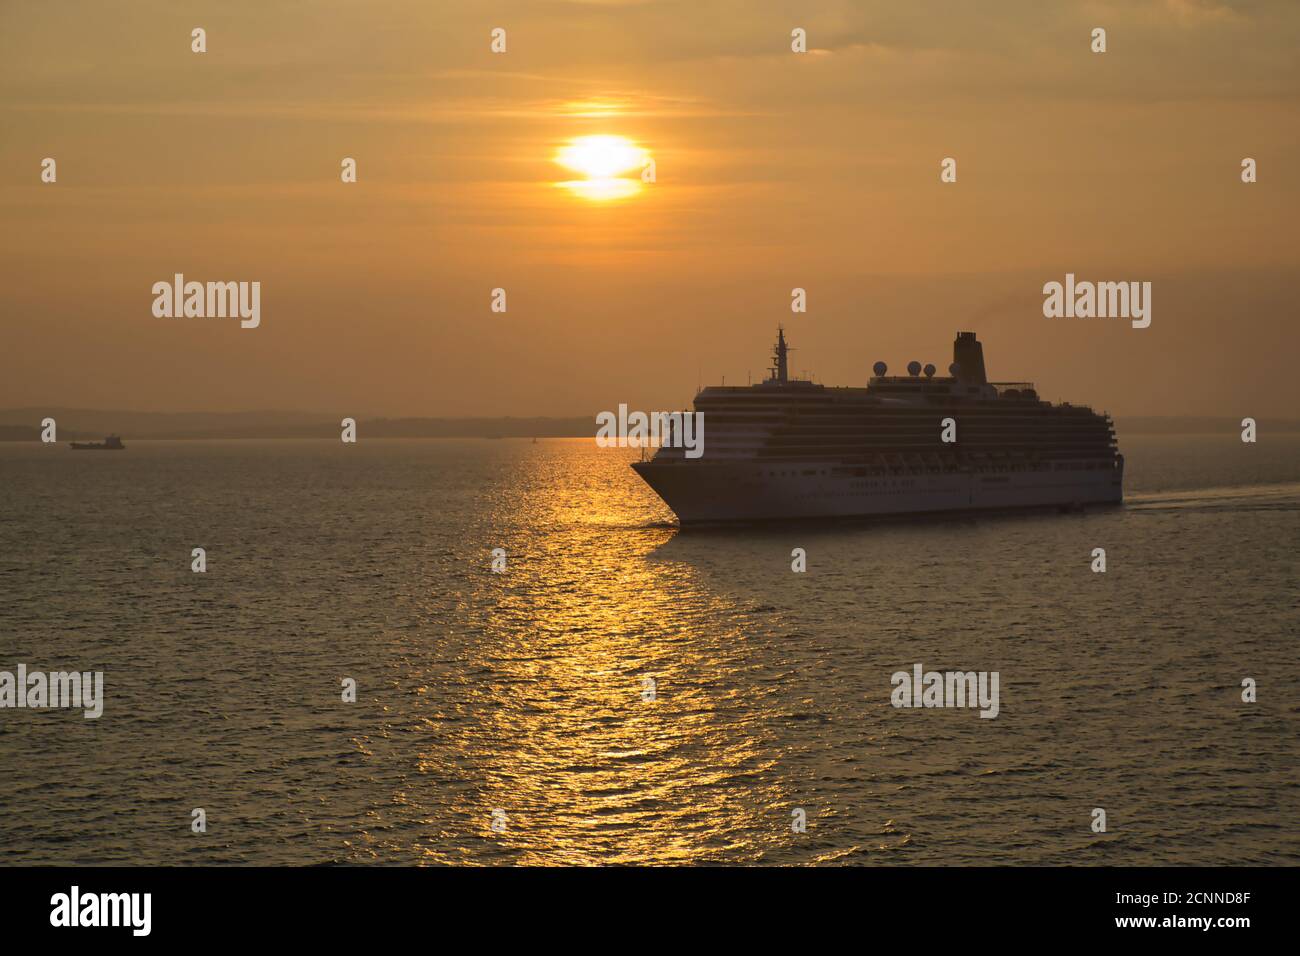 Ein Kreuzfahrtschiff, das bei Sonnenuntergang in den Hafen von Portsmouth segelt, wobei die untergehende Sonne einen Lichtweg auf der Wasseroberfläche mit dem Liner in Silhouette macht Stockfoto